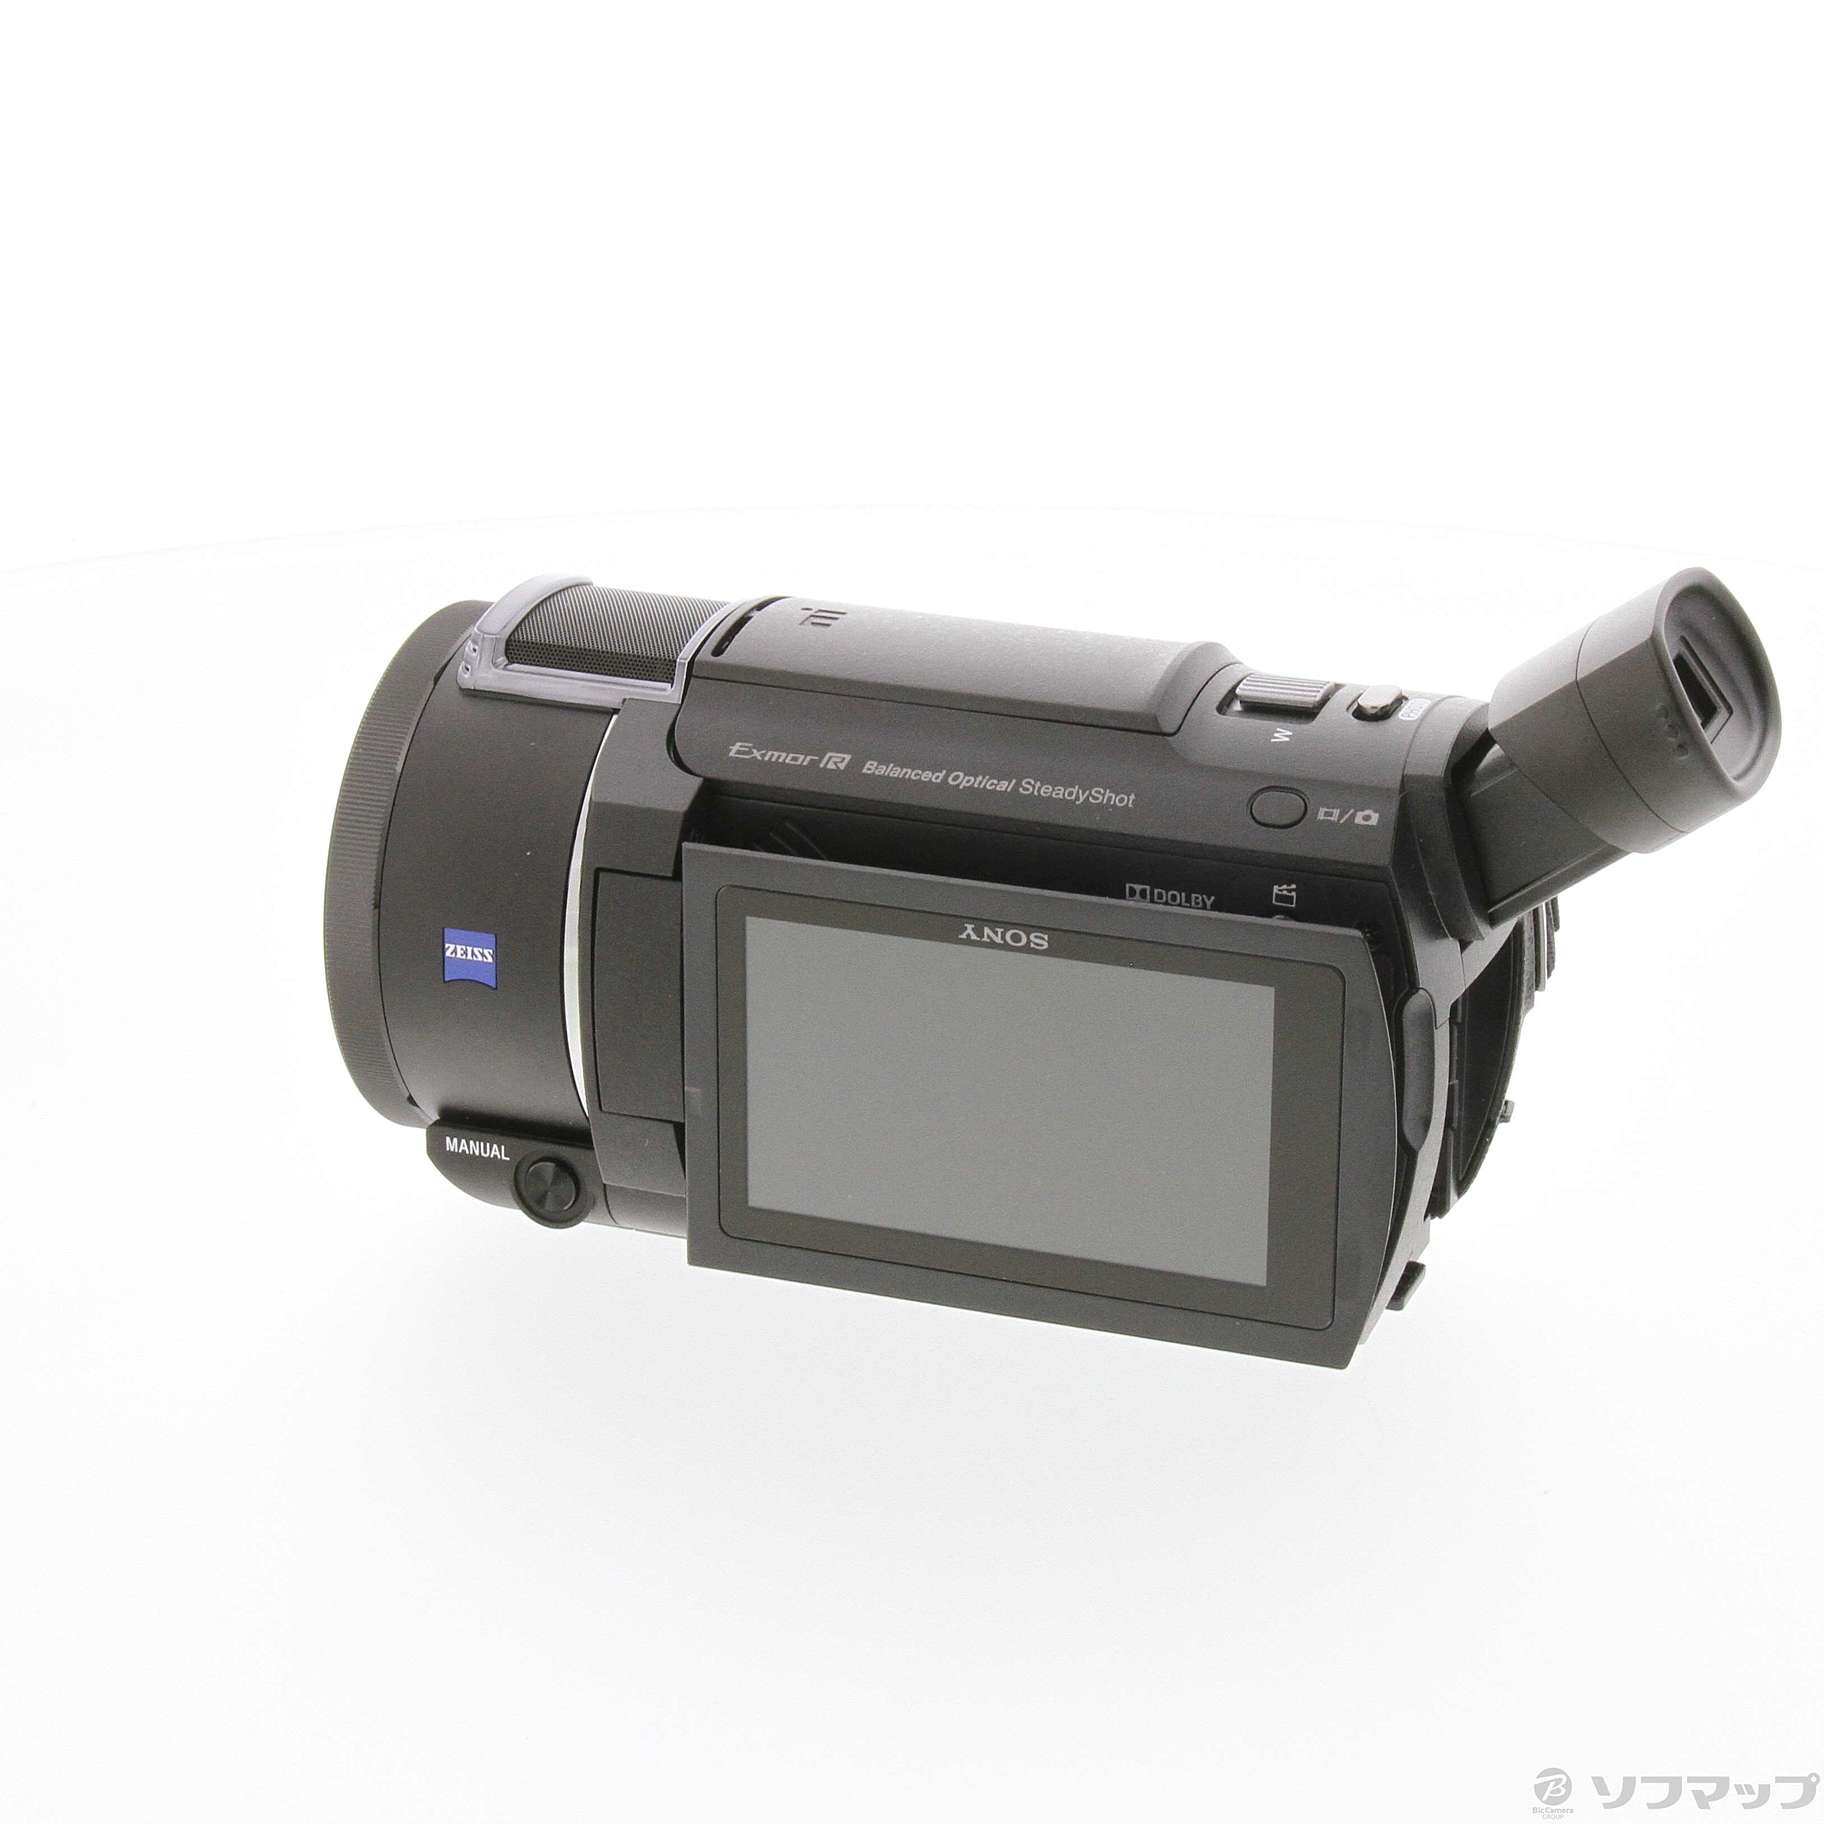 ソニー SONY ビデオカメラ FDR-AX45 4K 64GB 光学20倍 ブラック 